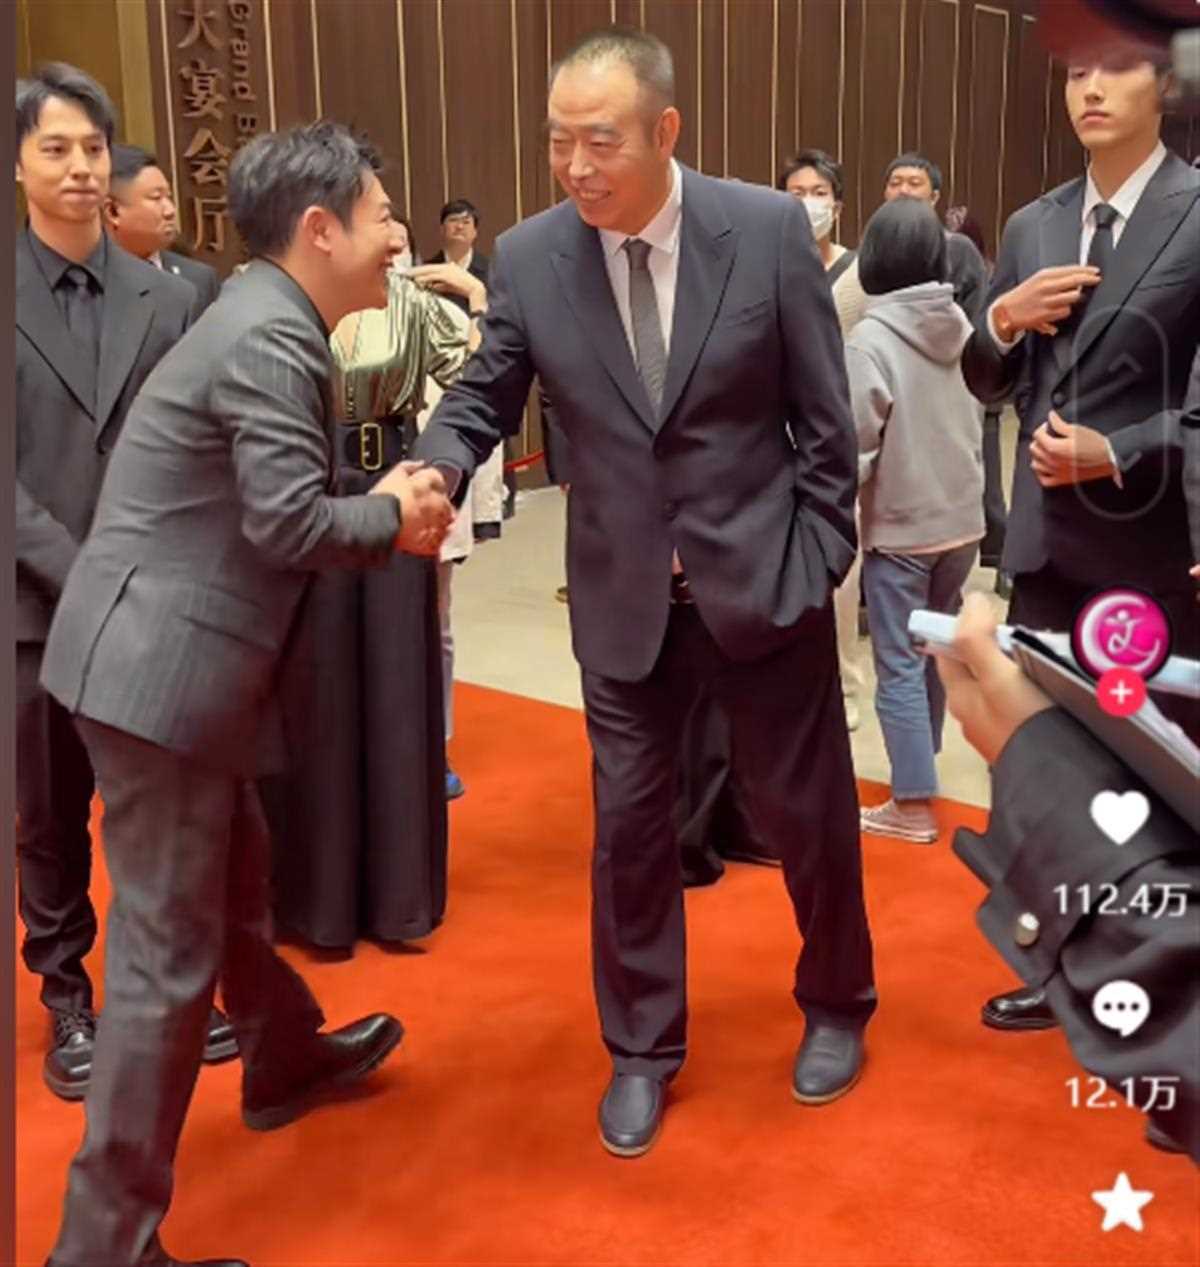 陈凯歌单手插兜和张颂文握手被骂 想问一下你们看视频了吗？